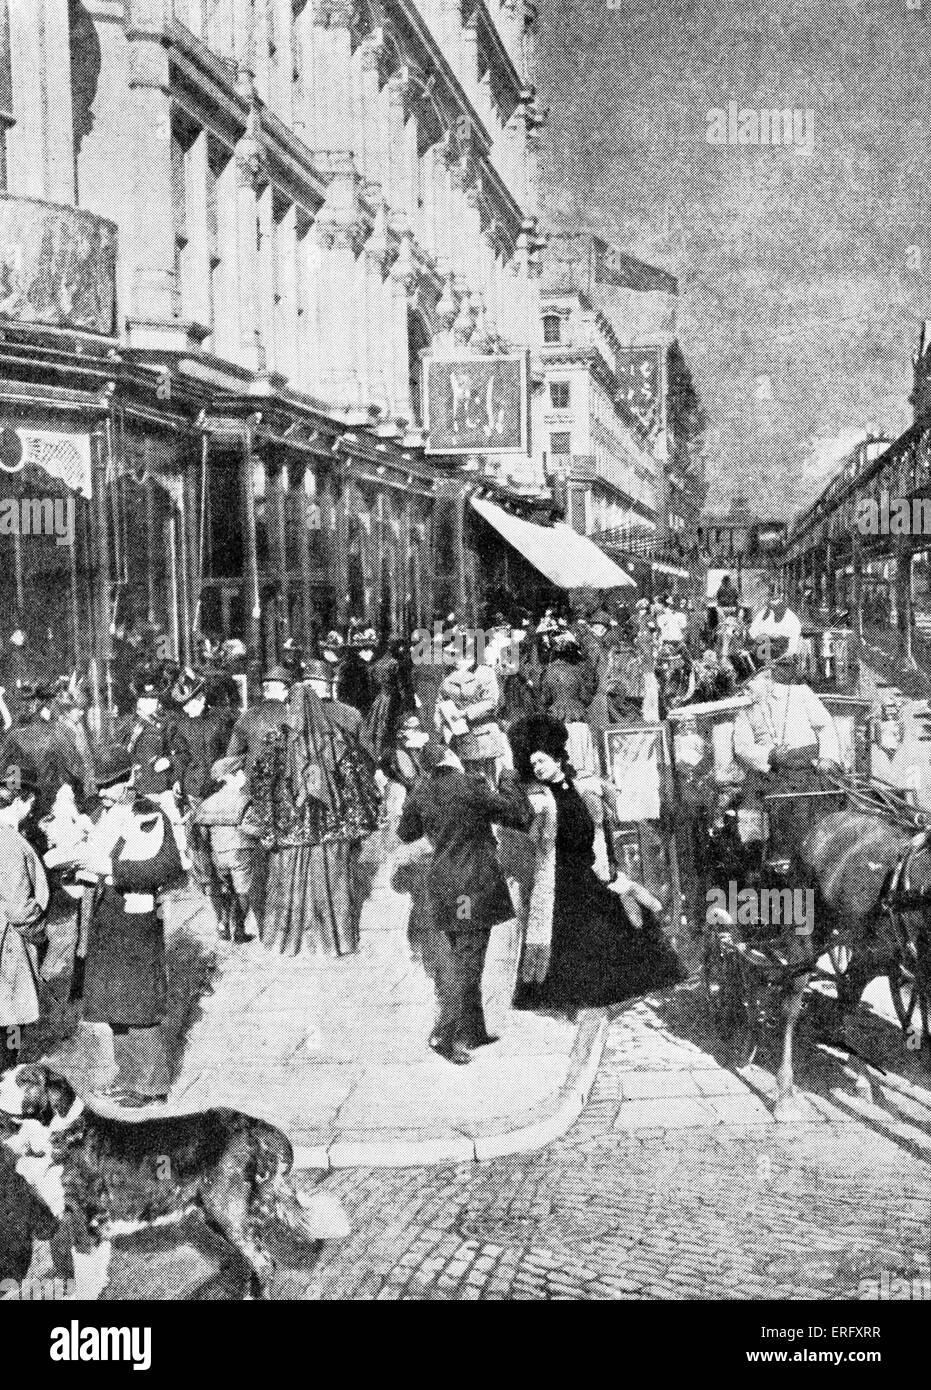 Des 19. Jahrhunderts auf der Sixth Avenue in New York. Jetzt bekannt als Avenue of the Americas. Renommierten Einkaufsviertel in den 1890er Jahren mit Kaufhäusern Altman, McCreeys und Macy's. Stockfoto